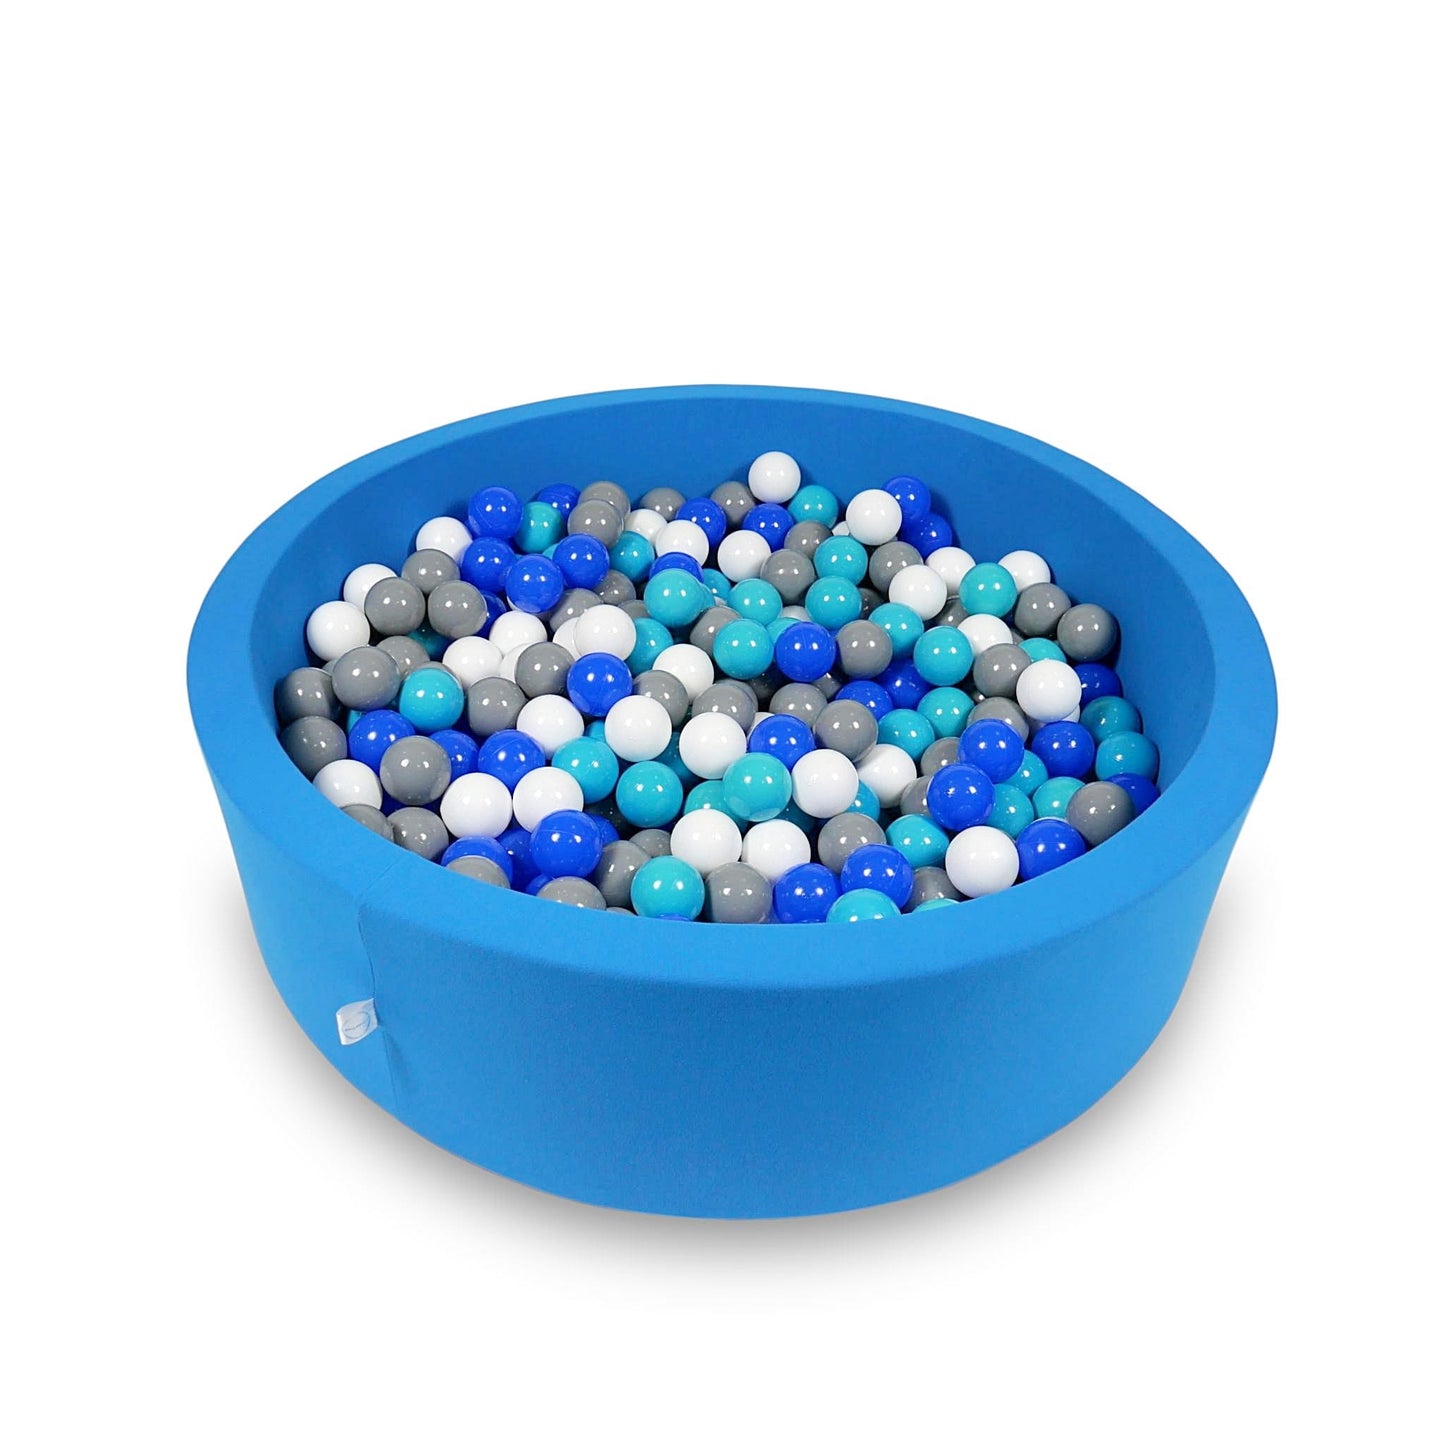 Piscine à Balles 110x30cm bleue avec balles 400pcs (turquoise, bleu, blanc, gris)